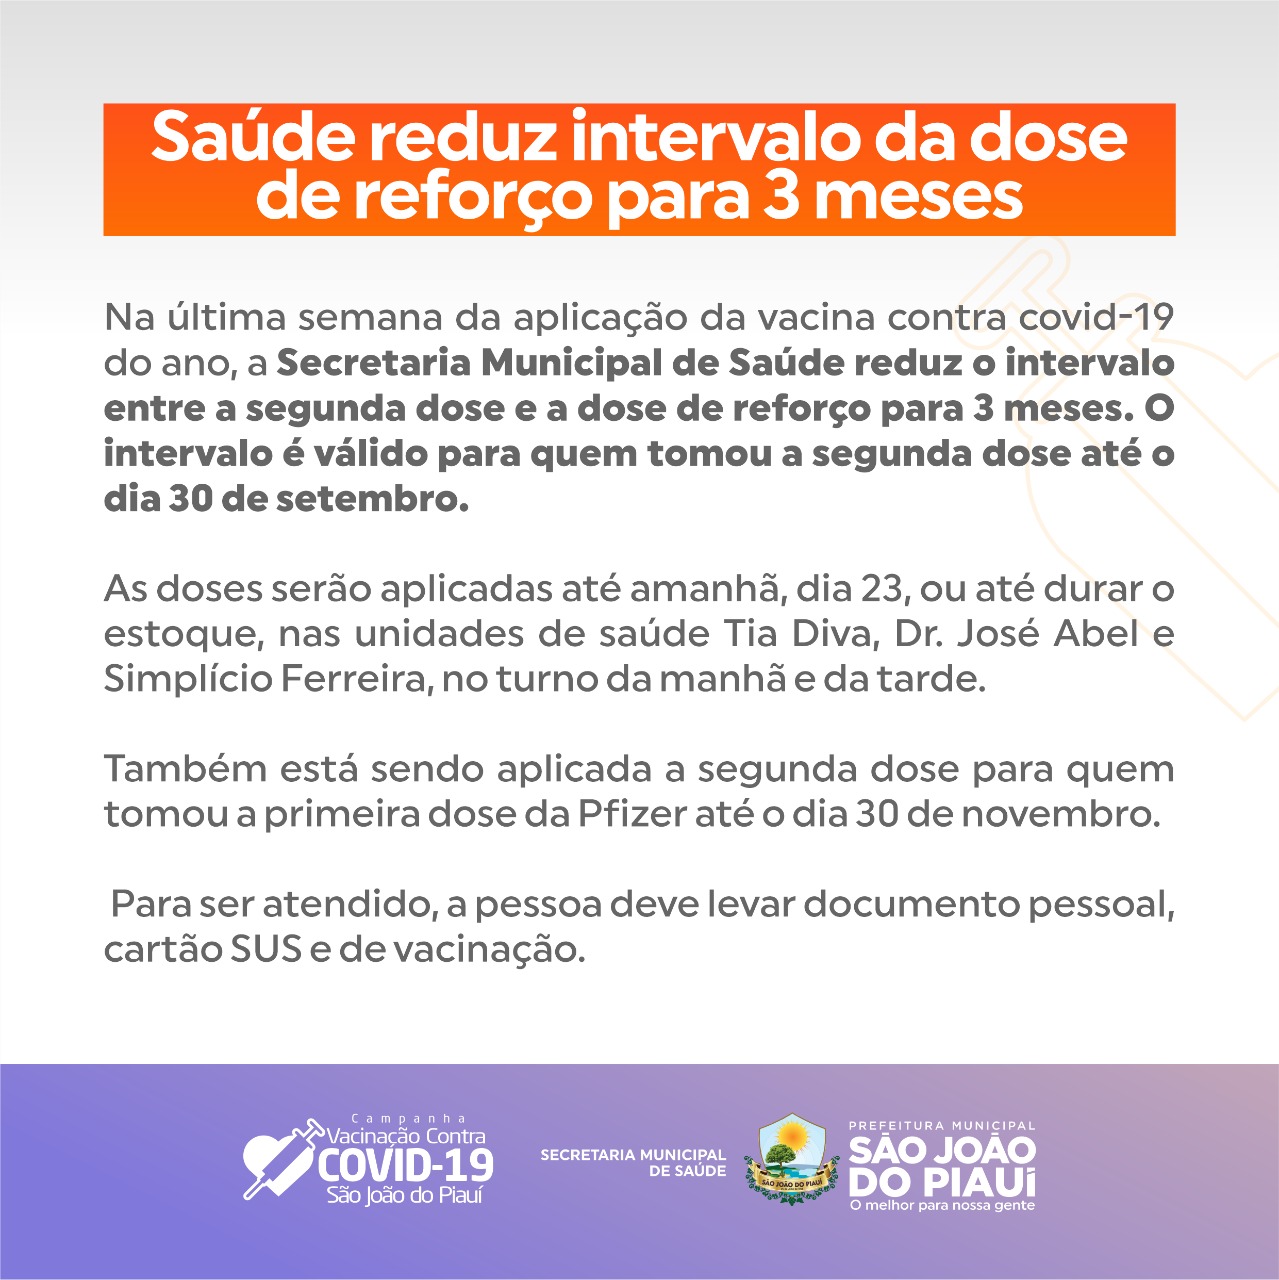 https://siteantigo.saojoaodopiaui.pi.gov.br/detalhe_noticia/visualizar/3c43bd1e332e4f2a5a216b833586a2a29ae